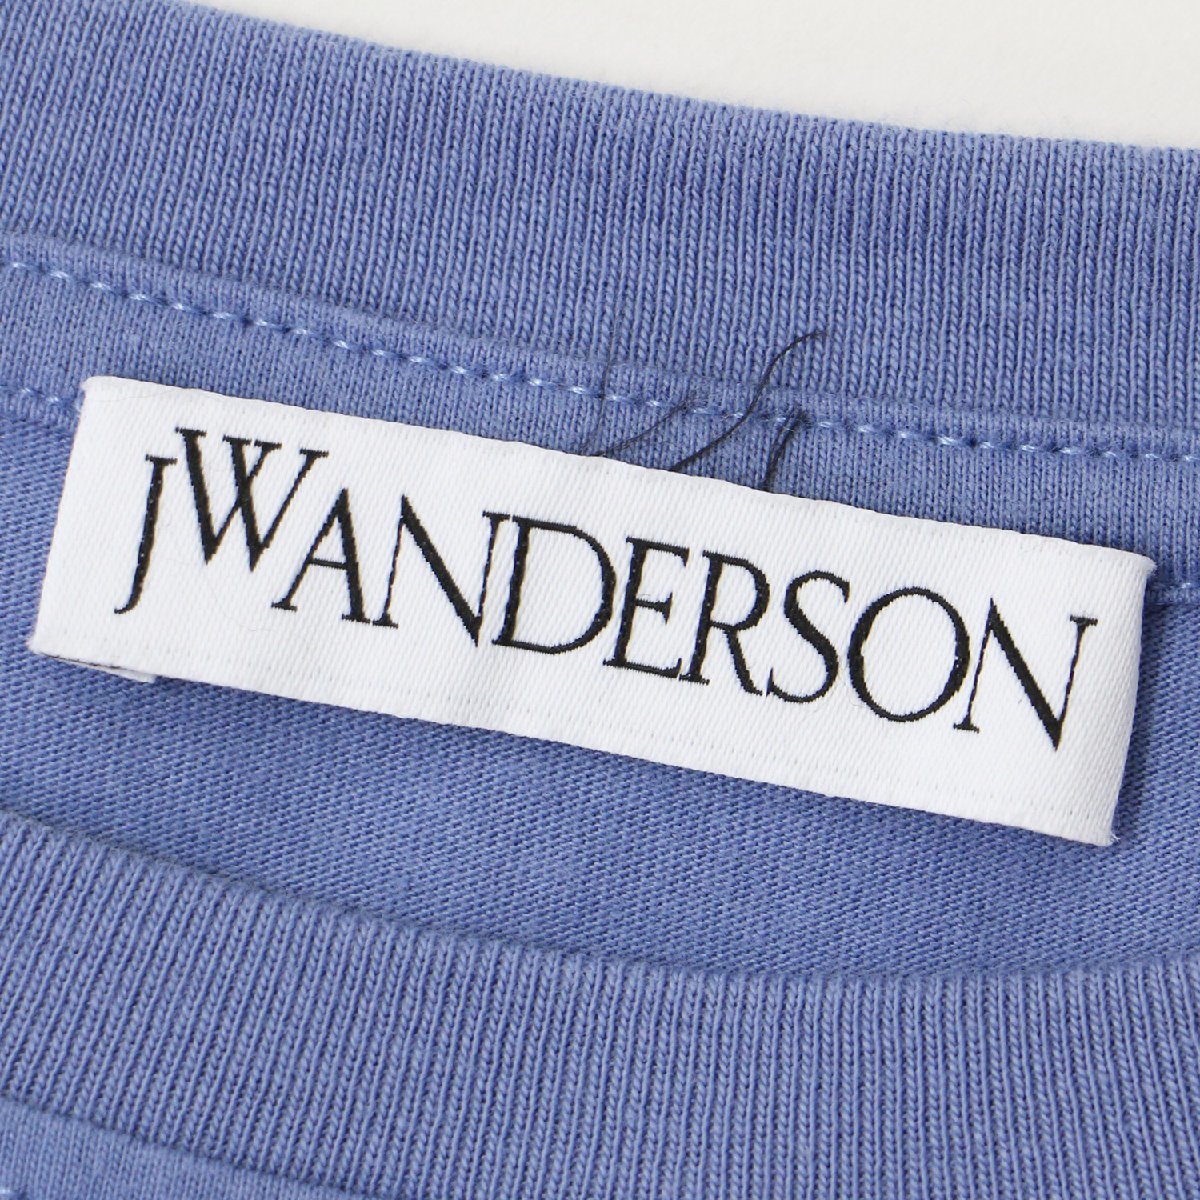 JW ANDERSON ジェイ ダブリュー アンダーソン Tシャツ トップス カットソー ブルー S 半袖 異素材 ドッキング ストライプ 変形 コットン_画像5